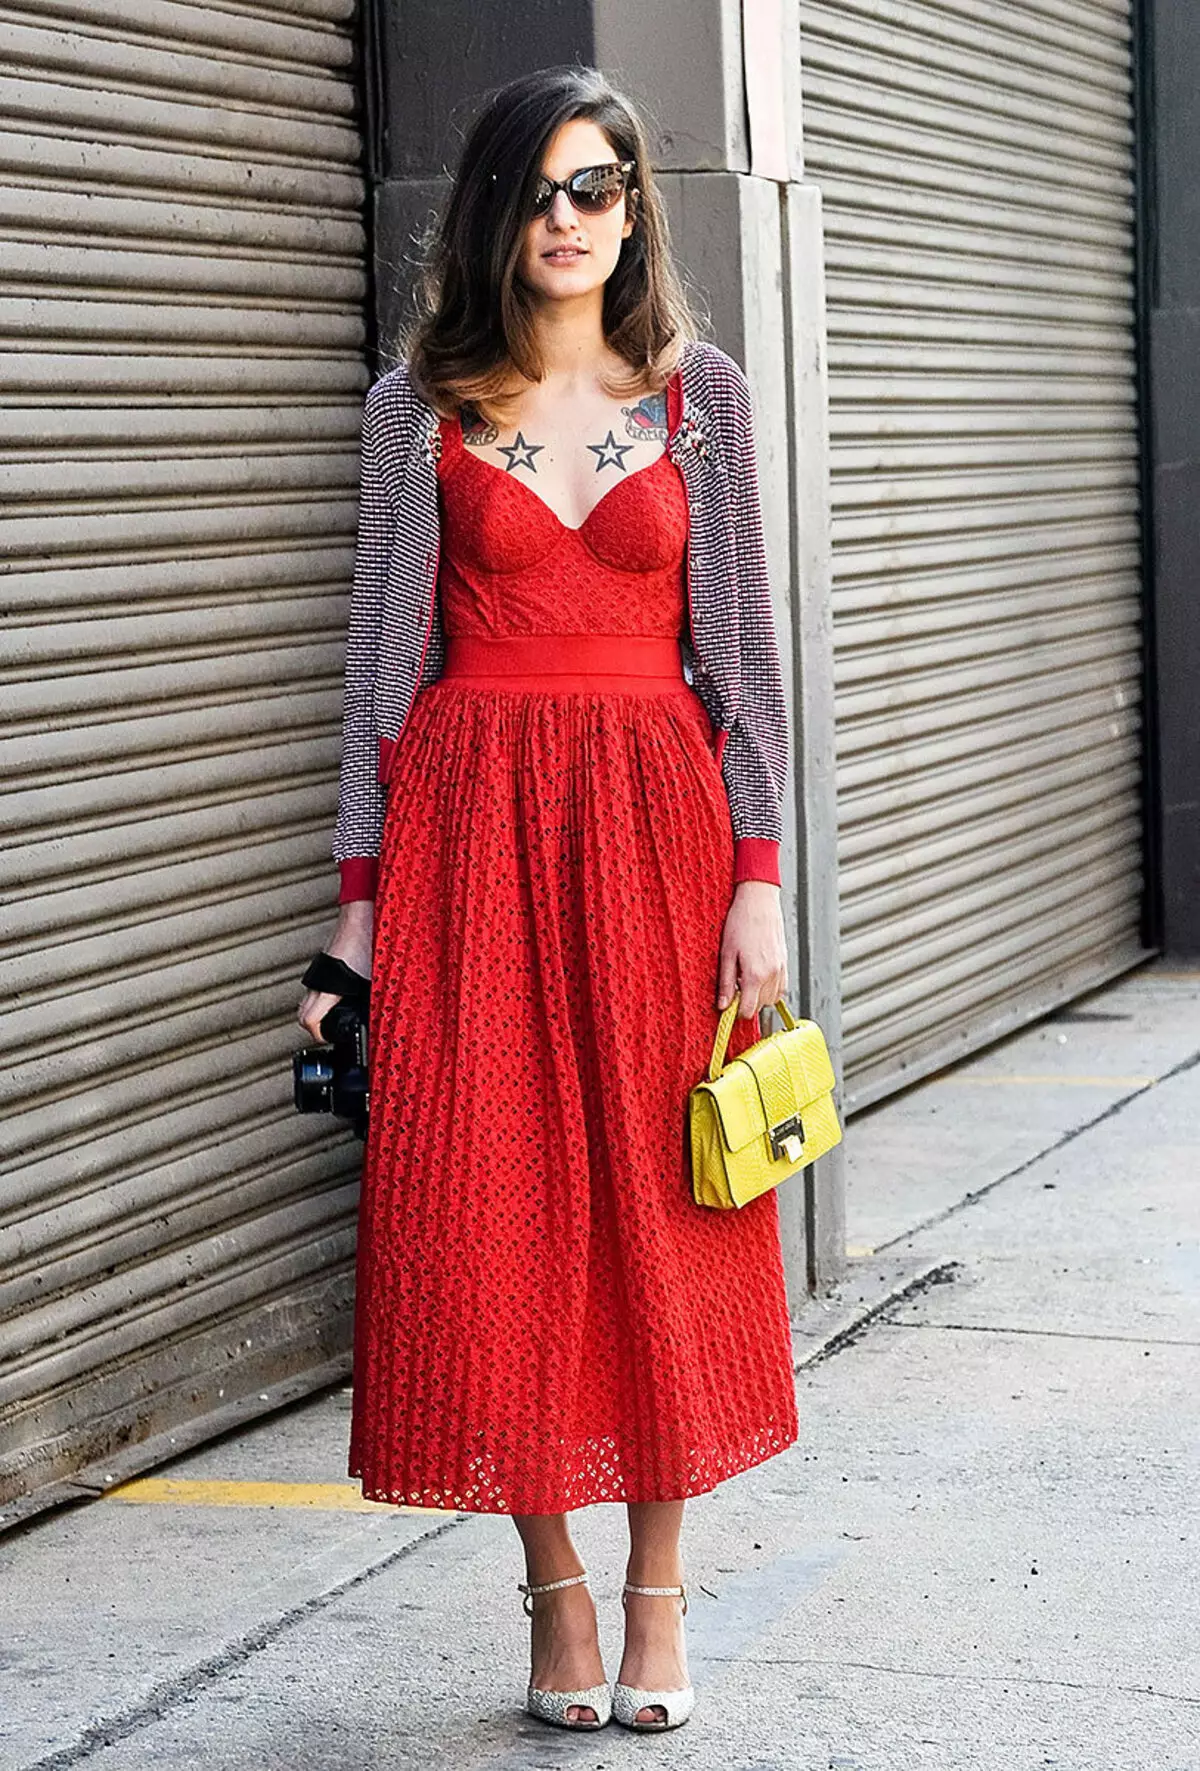 Mang một chiếc váy đỏ (69 ảnh): mà bạn có thể mặc một chiếc váy màu đỏ ở sàn và các mẫu ngắn, giày, váy đầm, quần bó và ren 1176_34